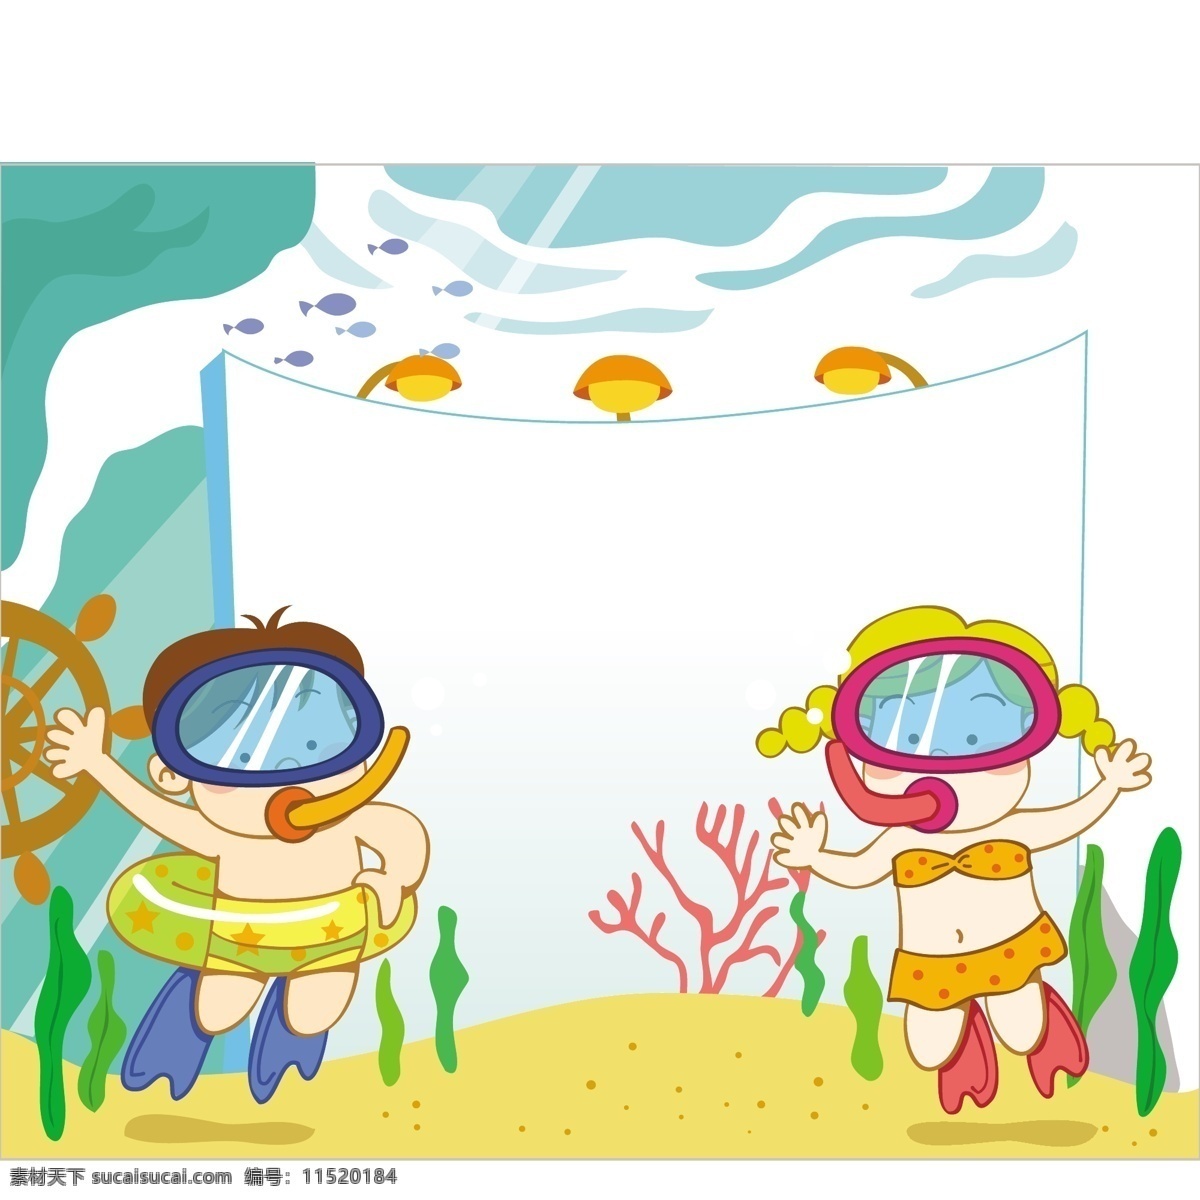 海底 世界 好 地方 卡通 学生 儿童 小学 开学 男孩 女孩 孩子 学校 救生圈 潜水 珊瑚